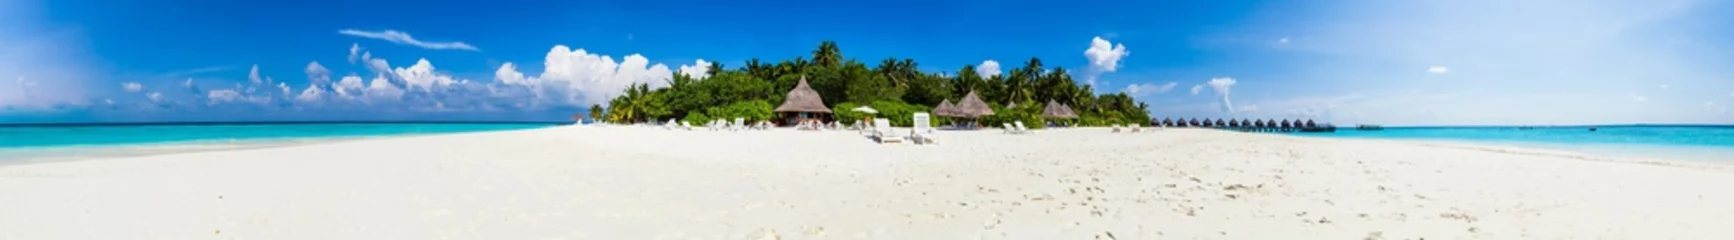 Fototapete Insel Panorama einer tropischen Insel mit weißem Sand und Palmen.